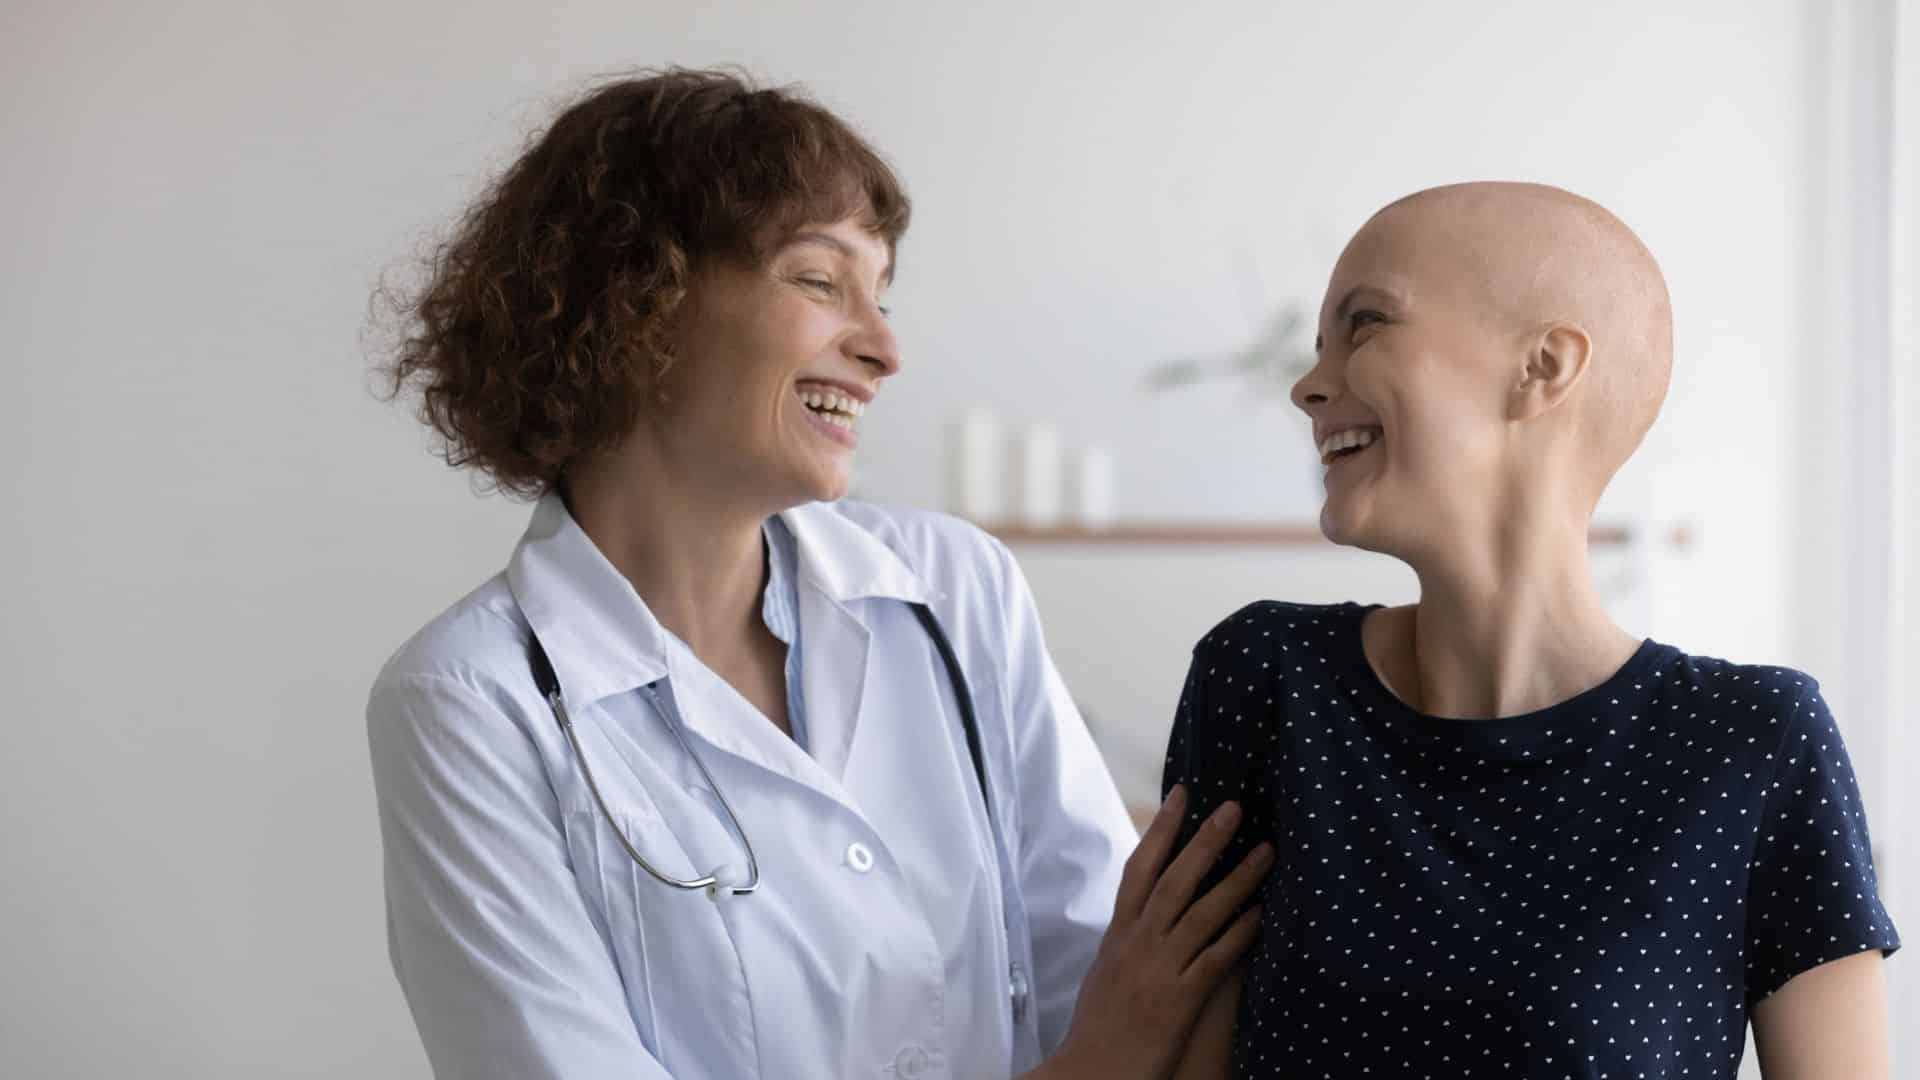 После химиотерапии поднялась температура. Фото людей проходящих химиотерапию. Люди после химиотерапии. Фото онкобольных женщин после химиотерапии фото.